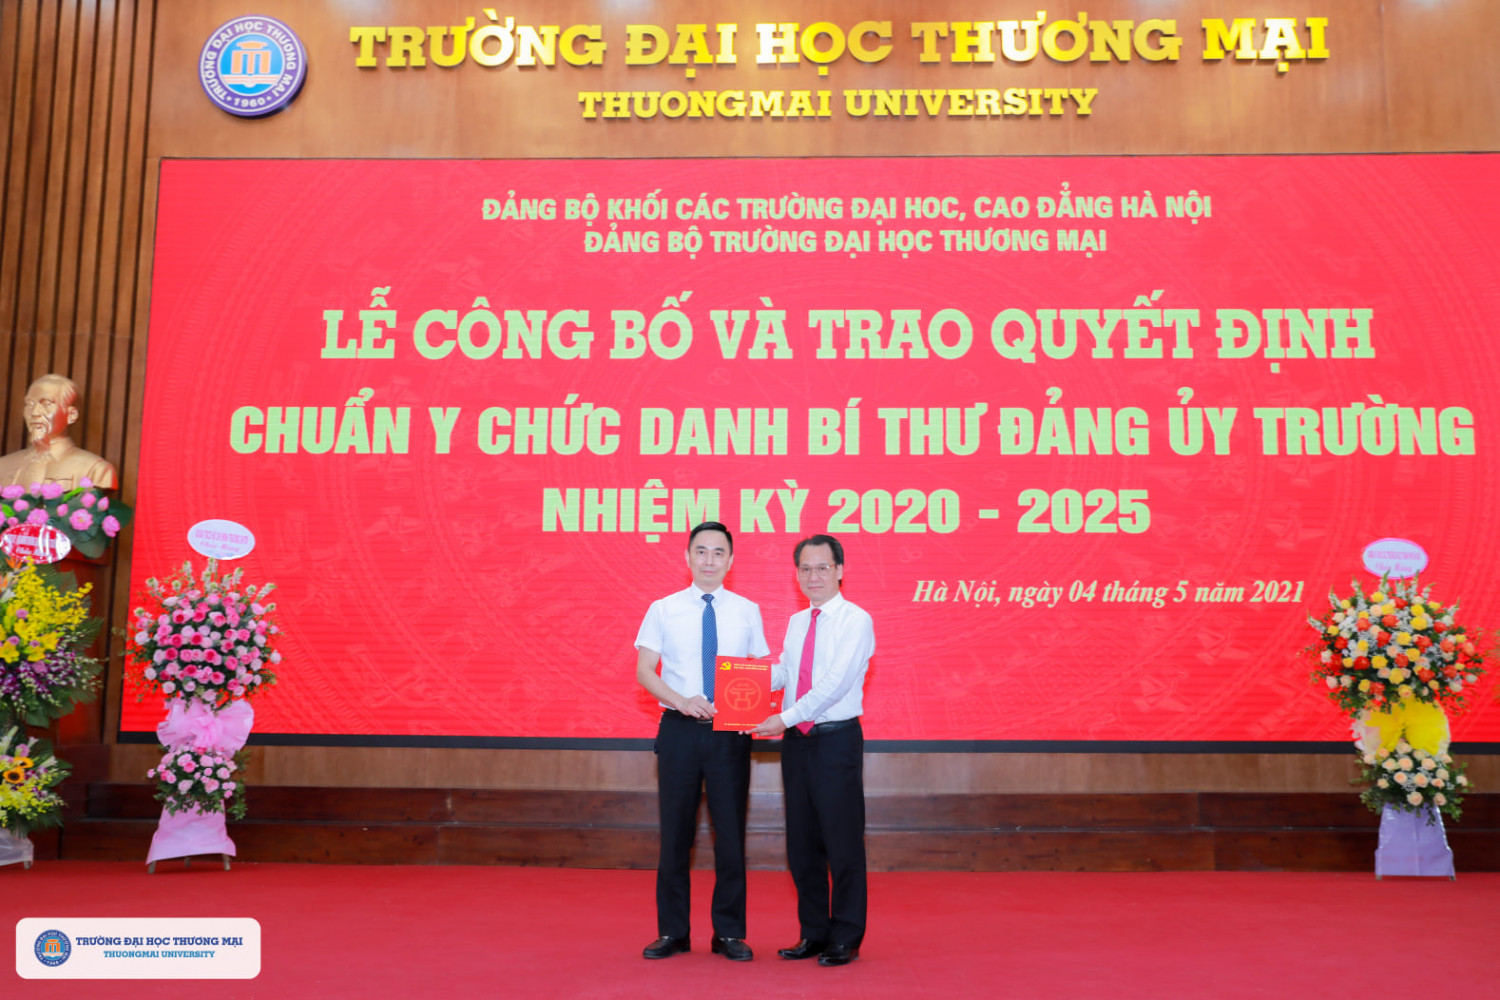 Lễ công bố và trao quyết định chuẩn y chức danh Bí thư Đảng ủy Trường nhiệm kỳ 2020 – 2025